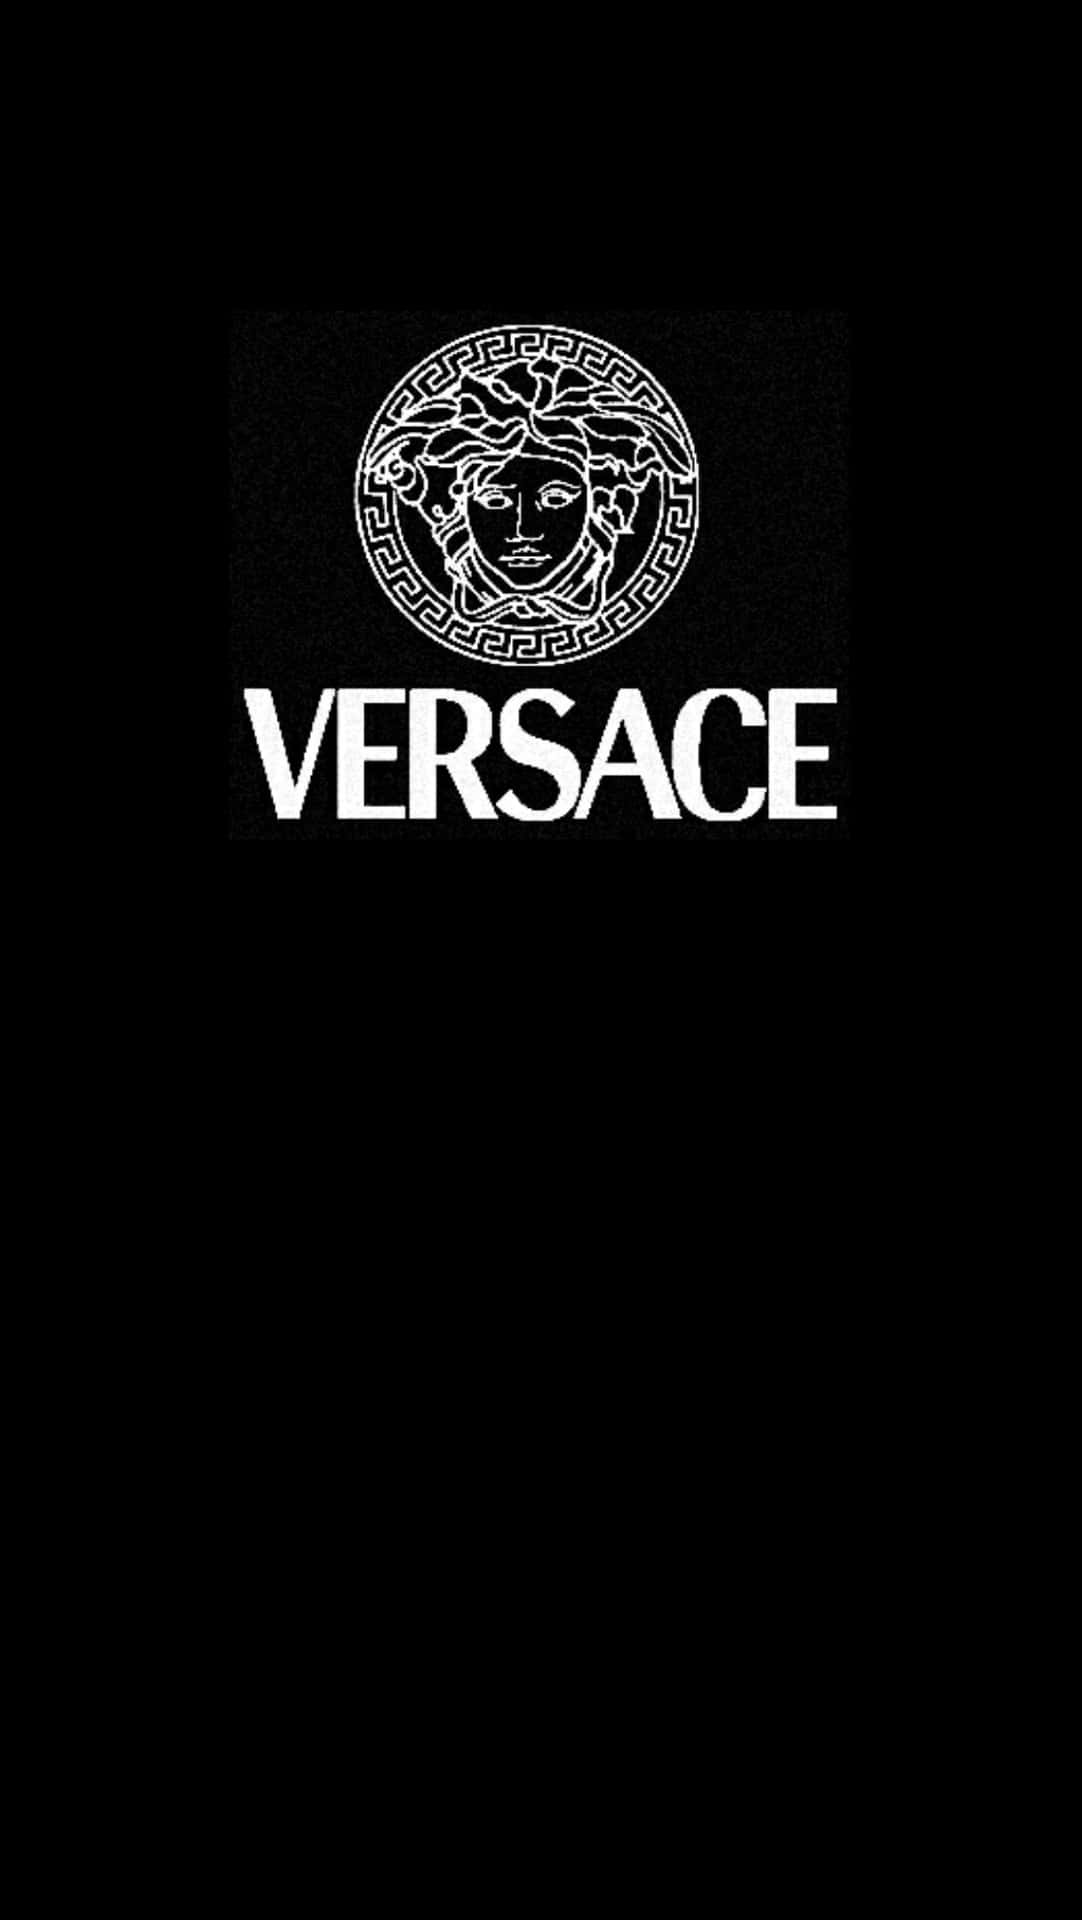 Download Versace Iphone Wallpaper | Wallpapers.com